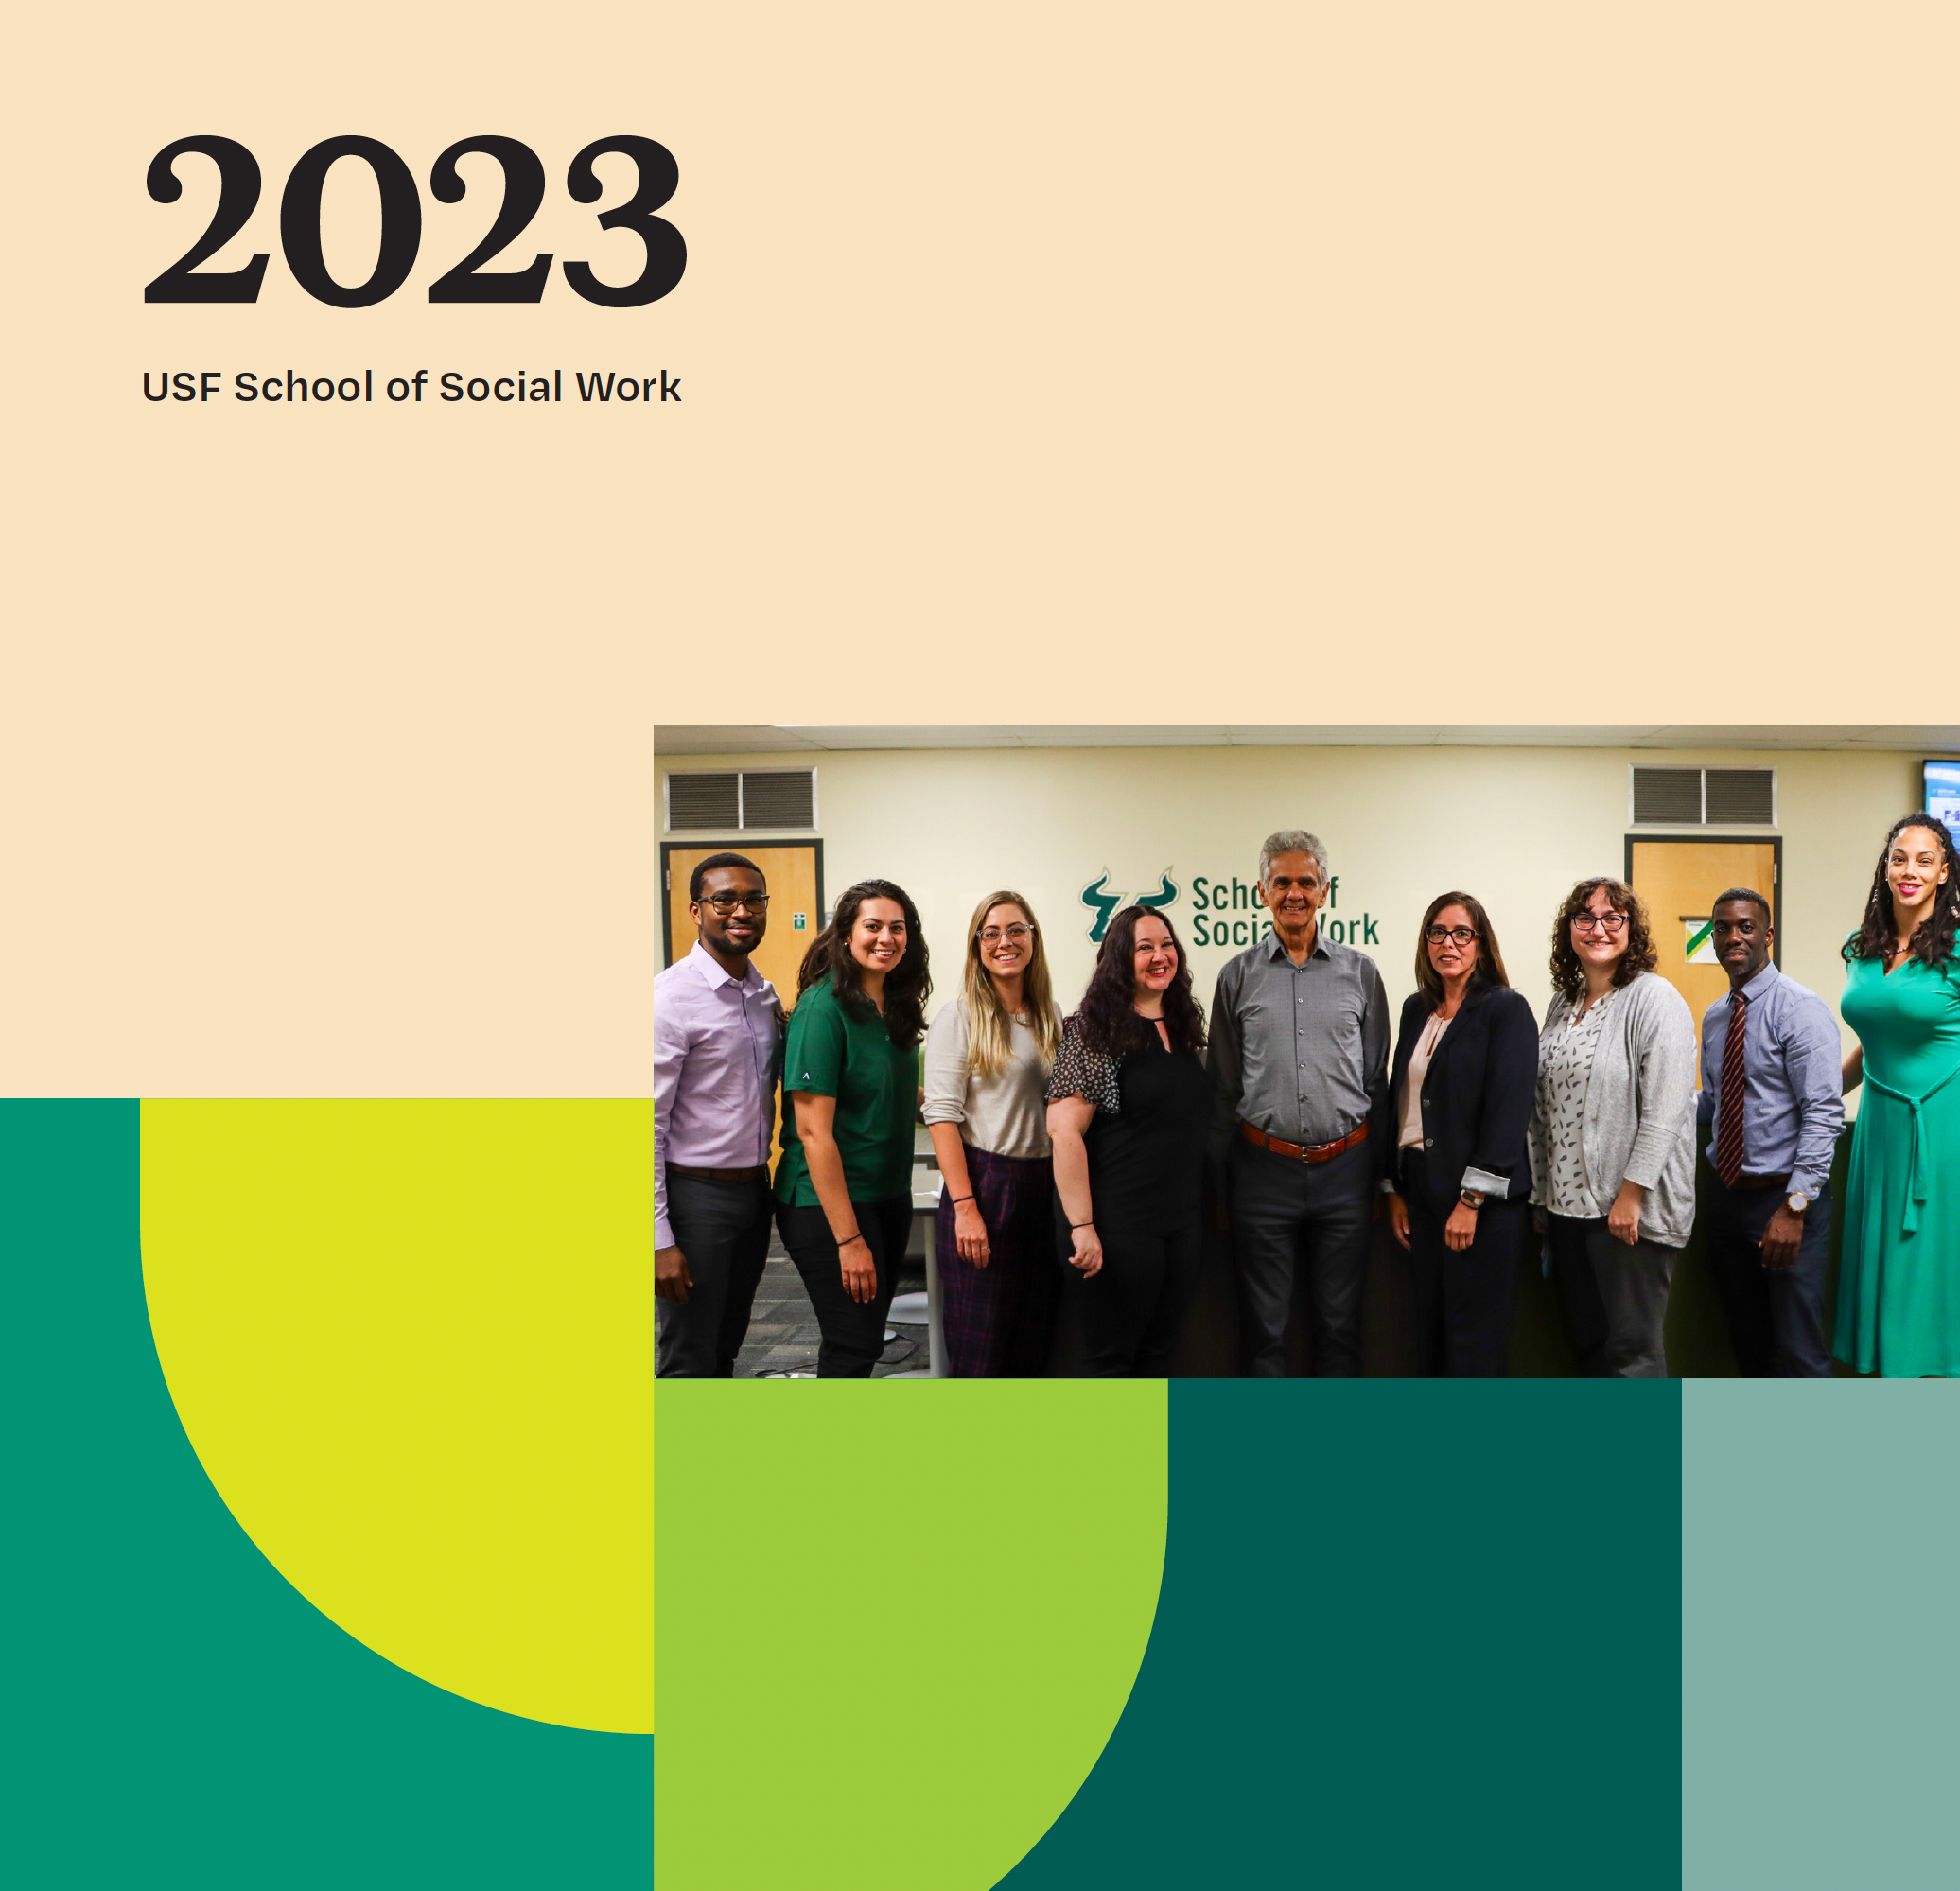 USF School of Social Work 2023: Major Milestones/New Opportunities